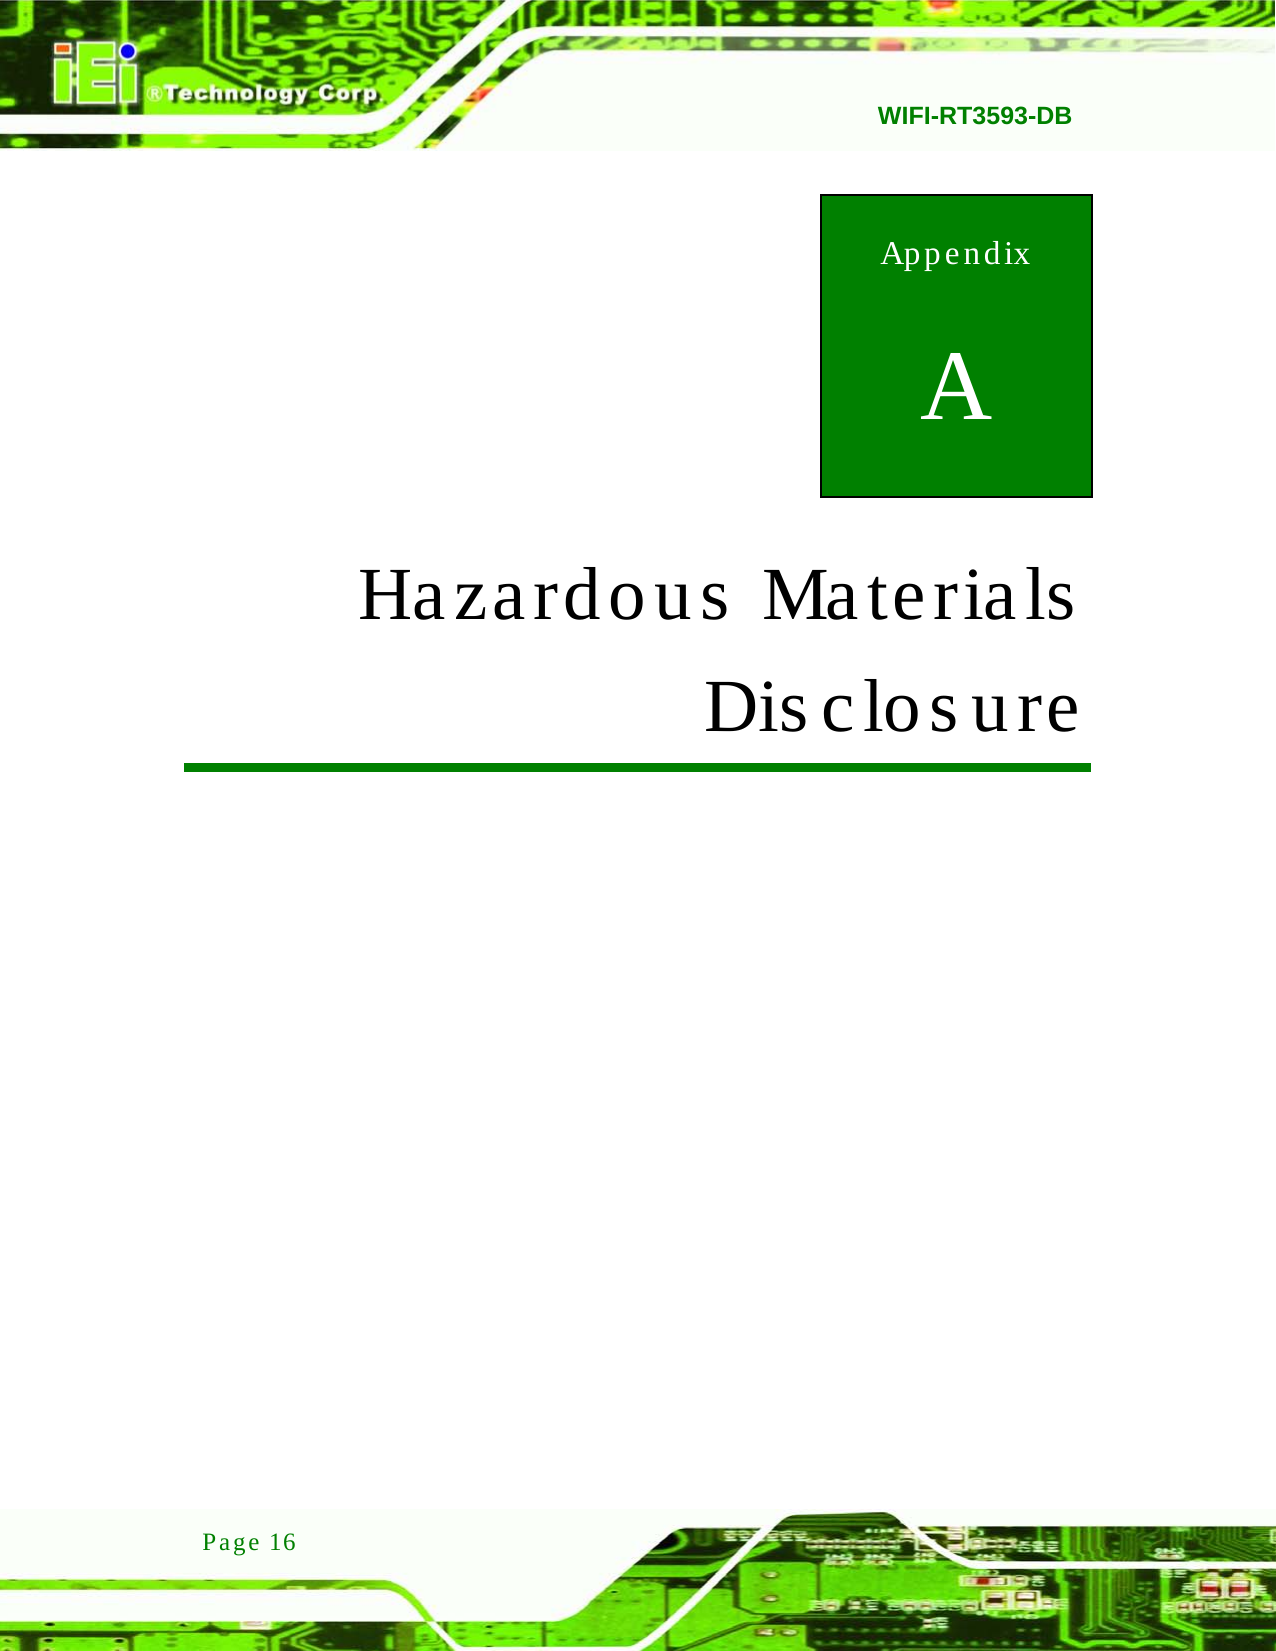   WIFI-RT3593-DB  Page 16 Appendix A A Hazardous Materials Dis clos ure 